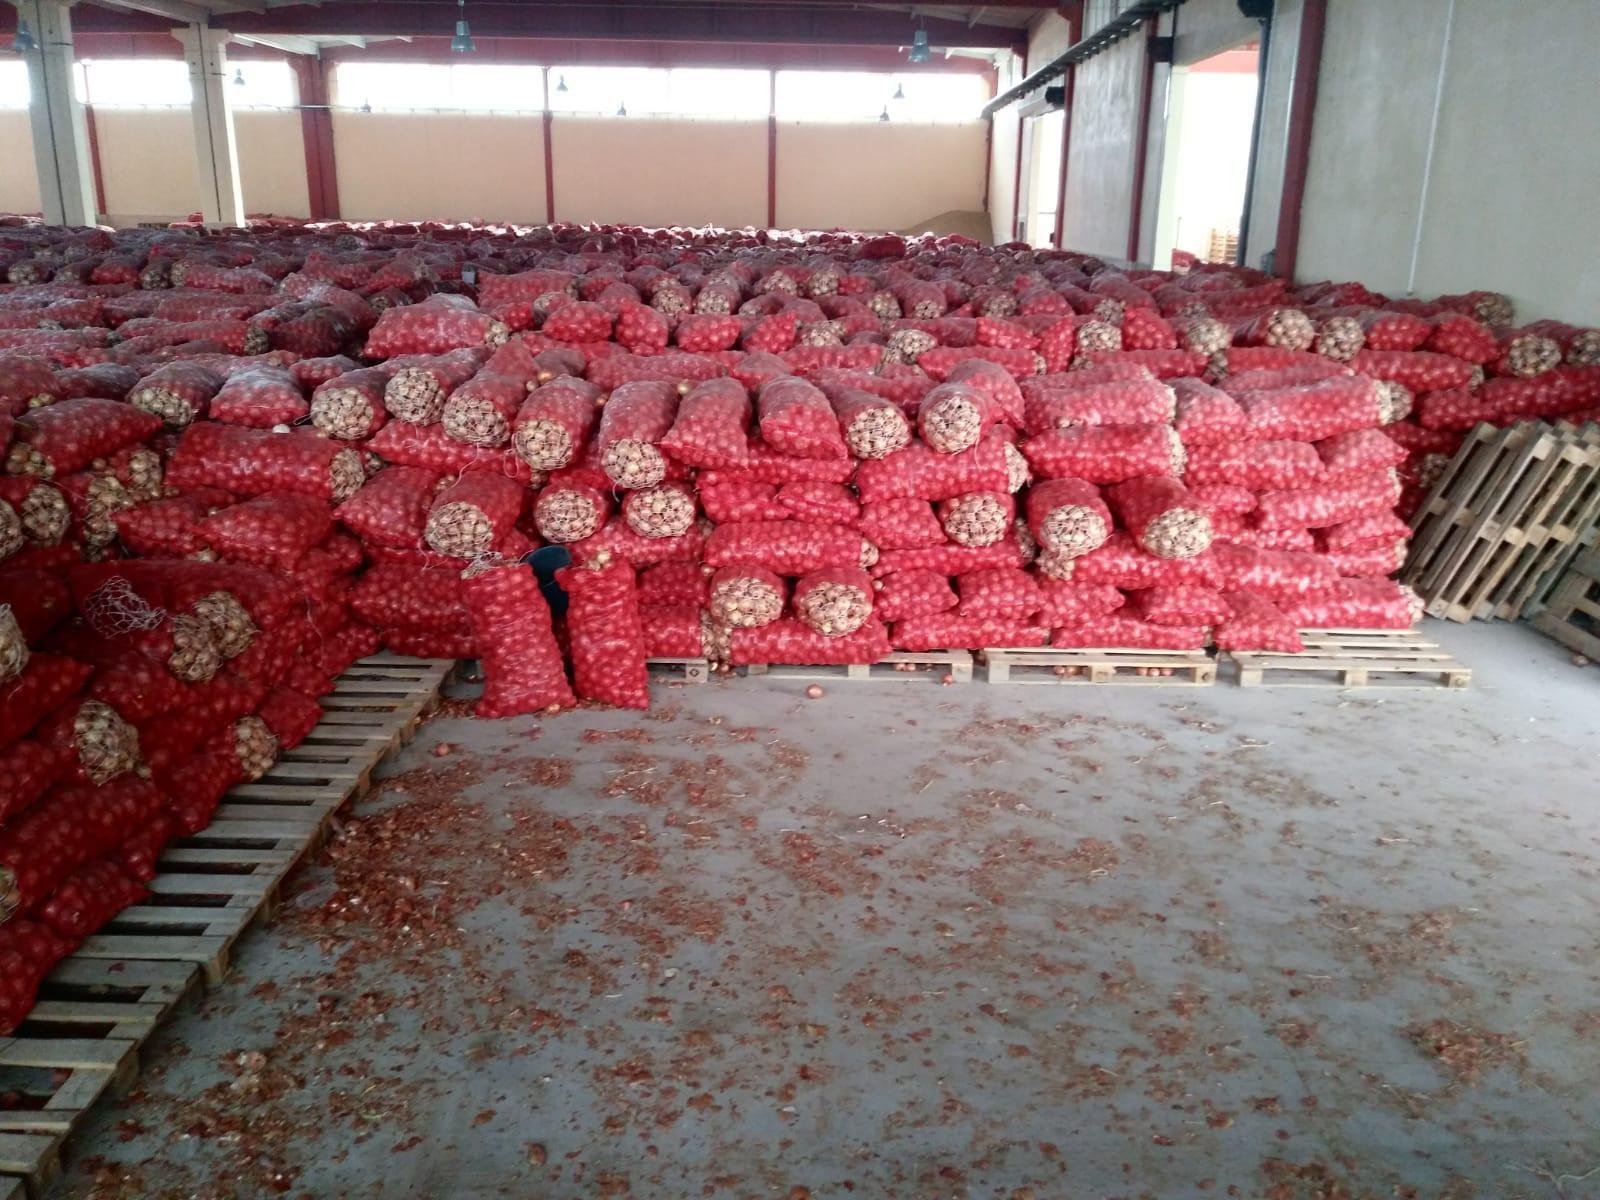 Ankara’da depodan stoklanmış 1300 ton kuru soğan çıktı